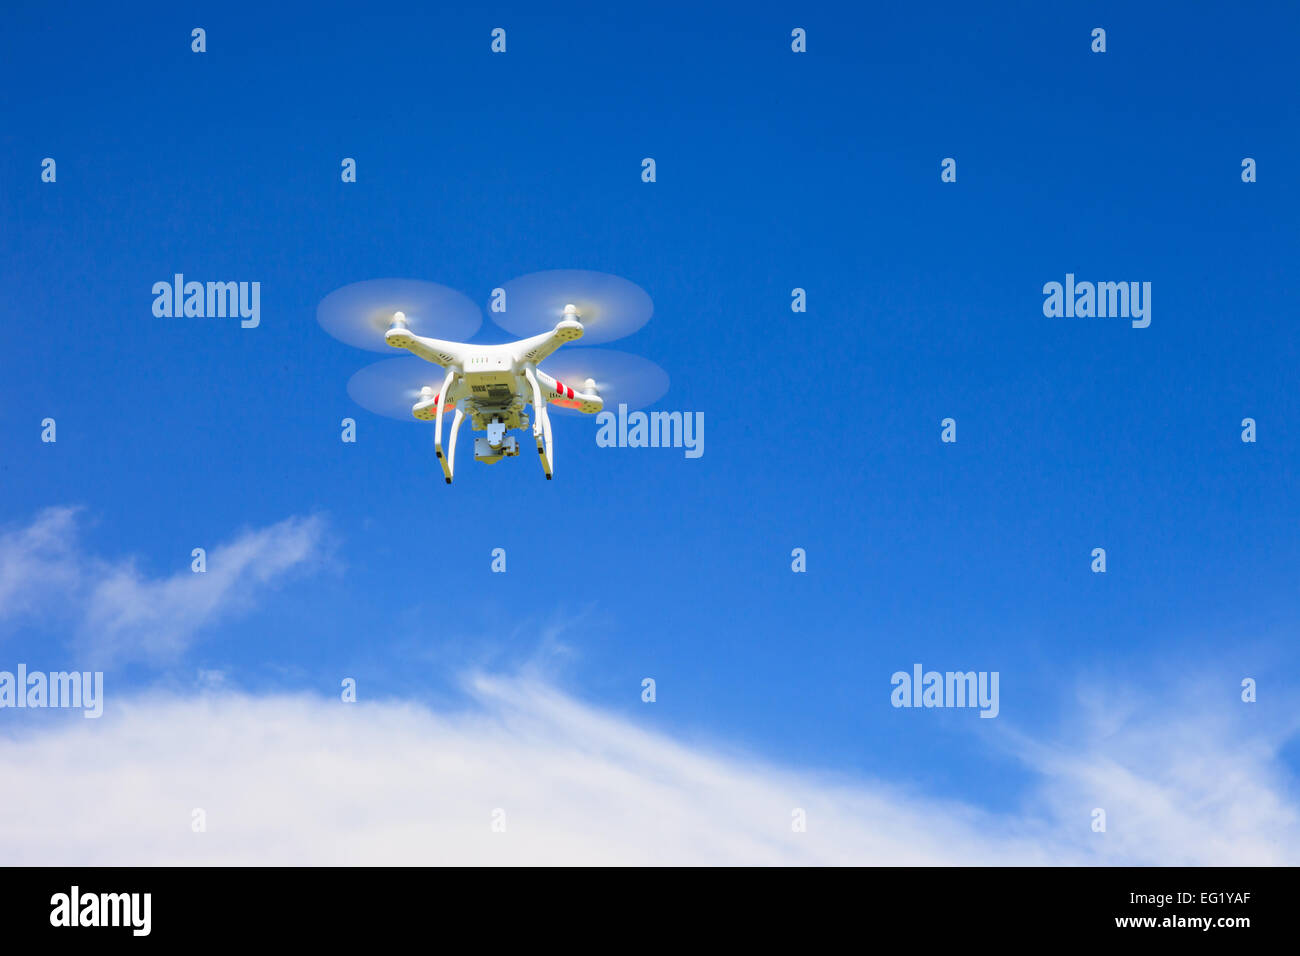 Une vue de dessous d'un drone avec un joint de cardan et de l'appareil photo. Drone, photographie, battant, surveillance Banque D'Images